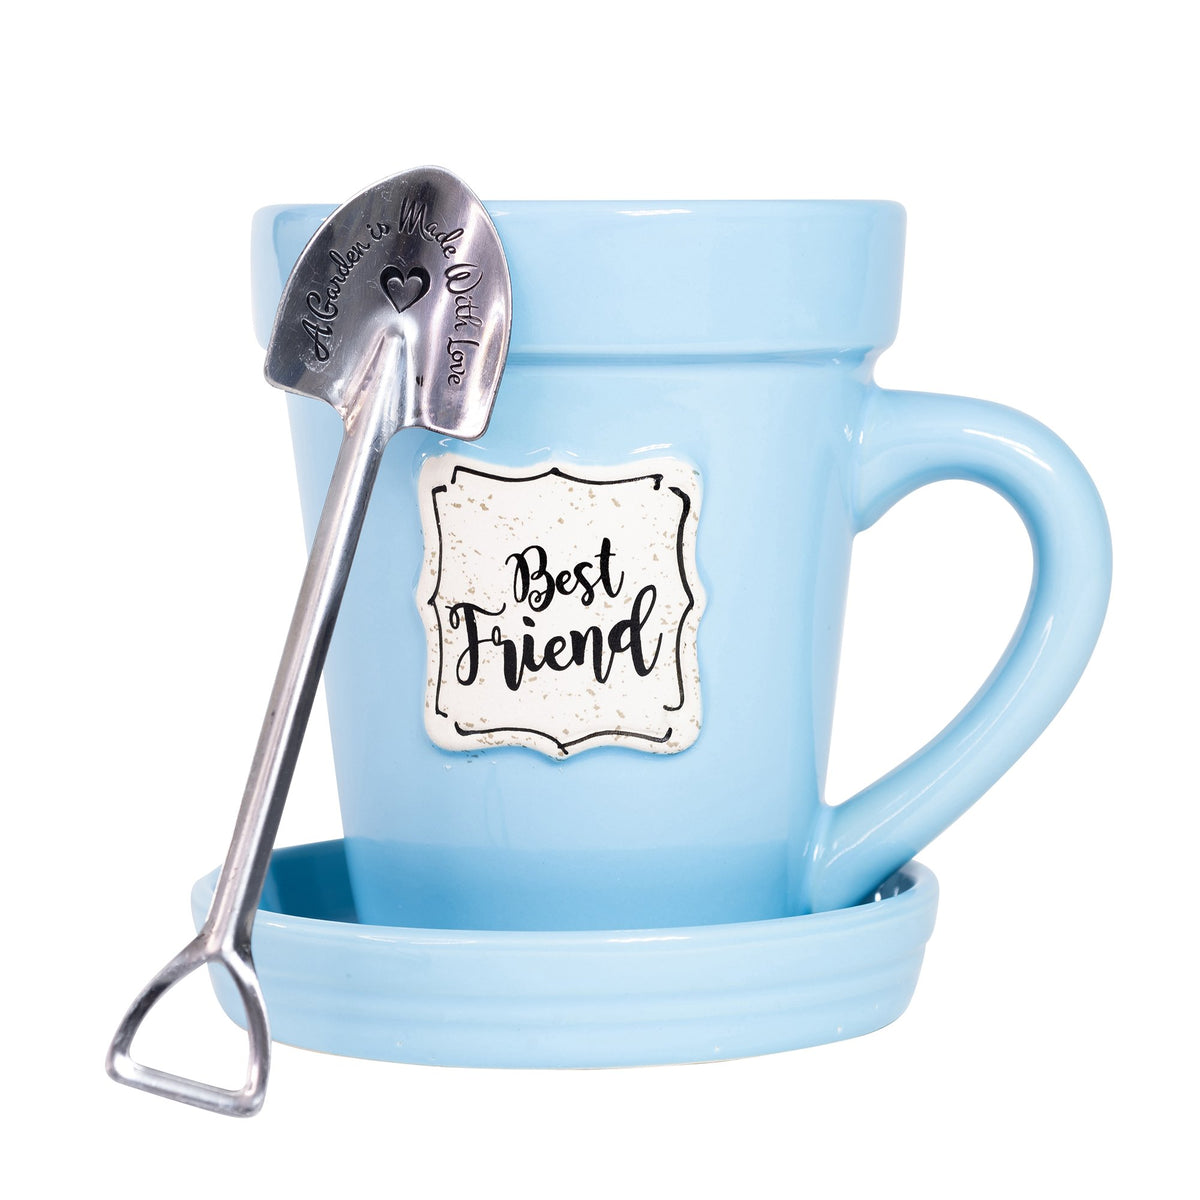 A Nicole Brayden Blue Flower Pot Mug - Best Friend with a spoon inside of it.